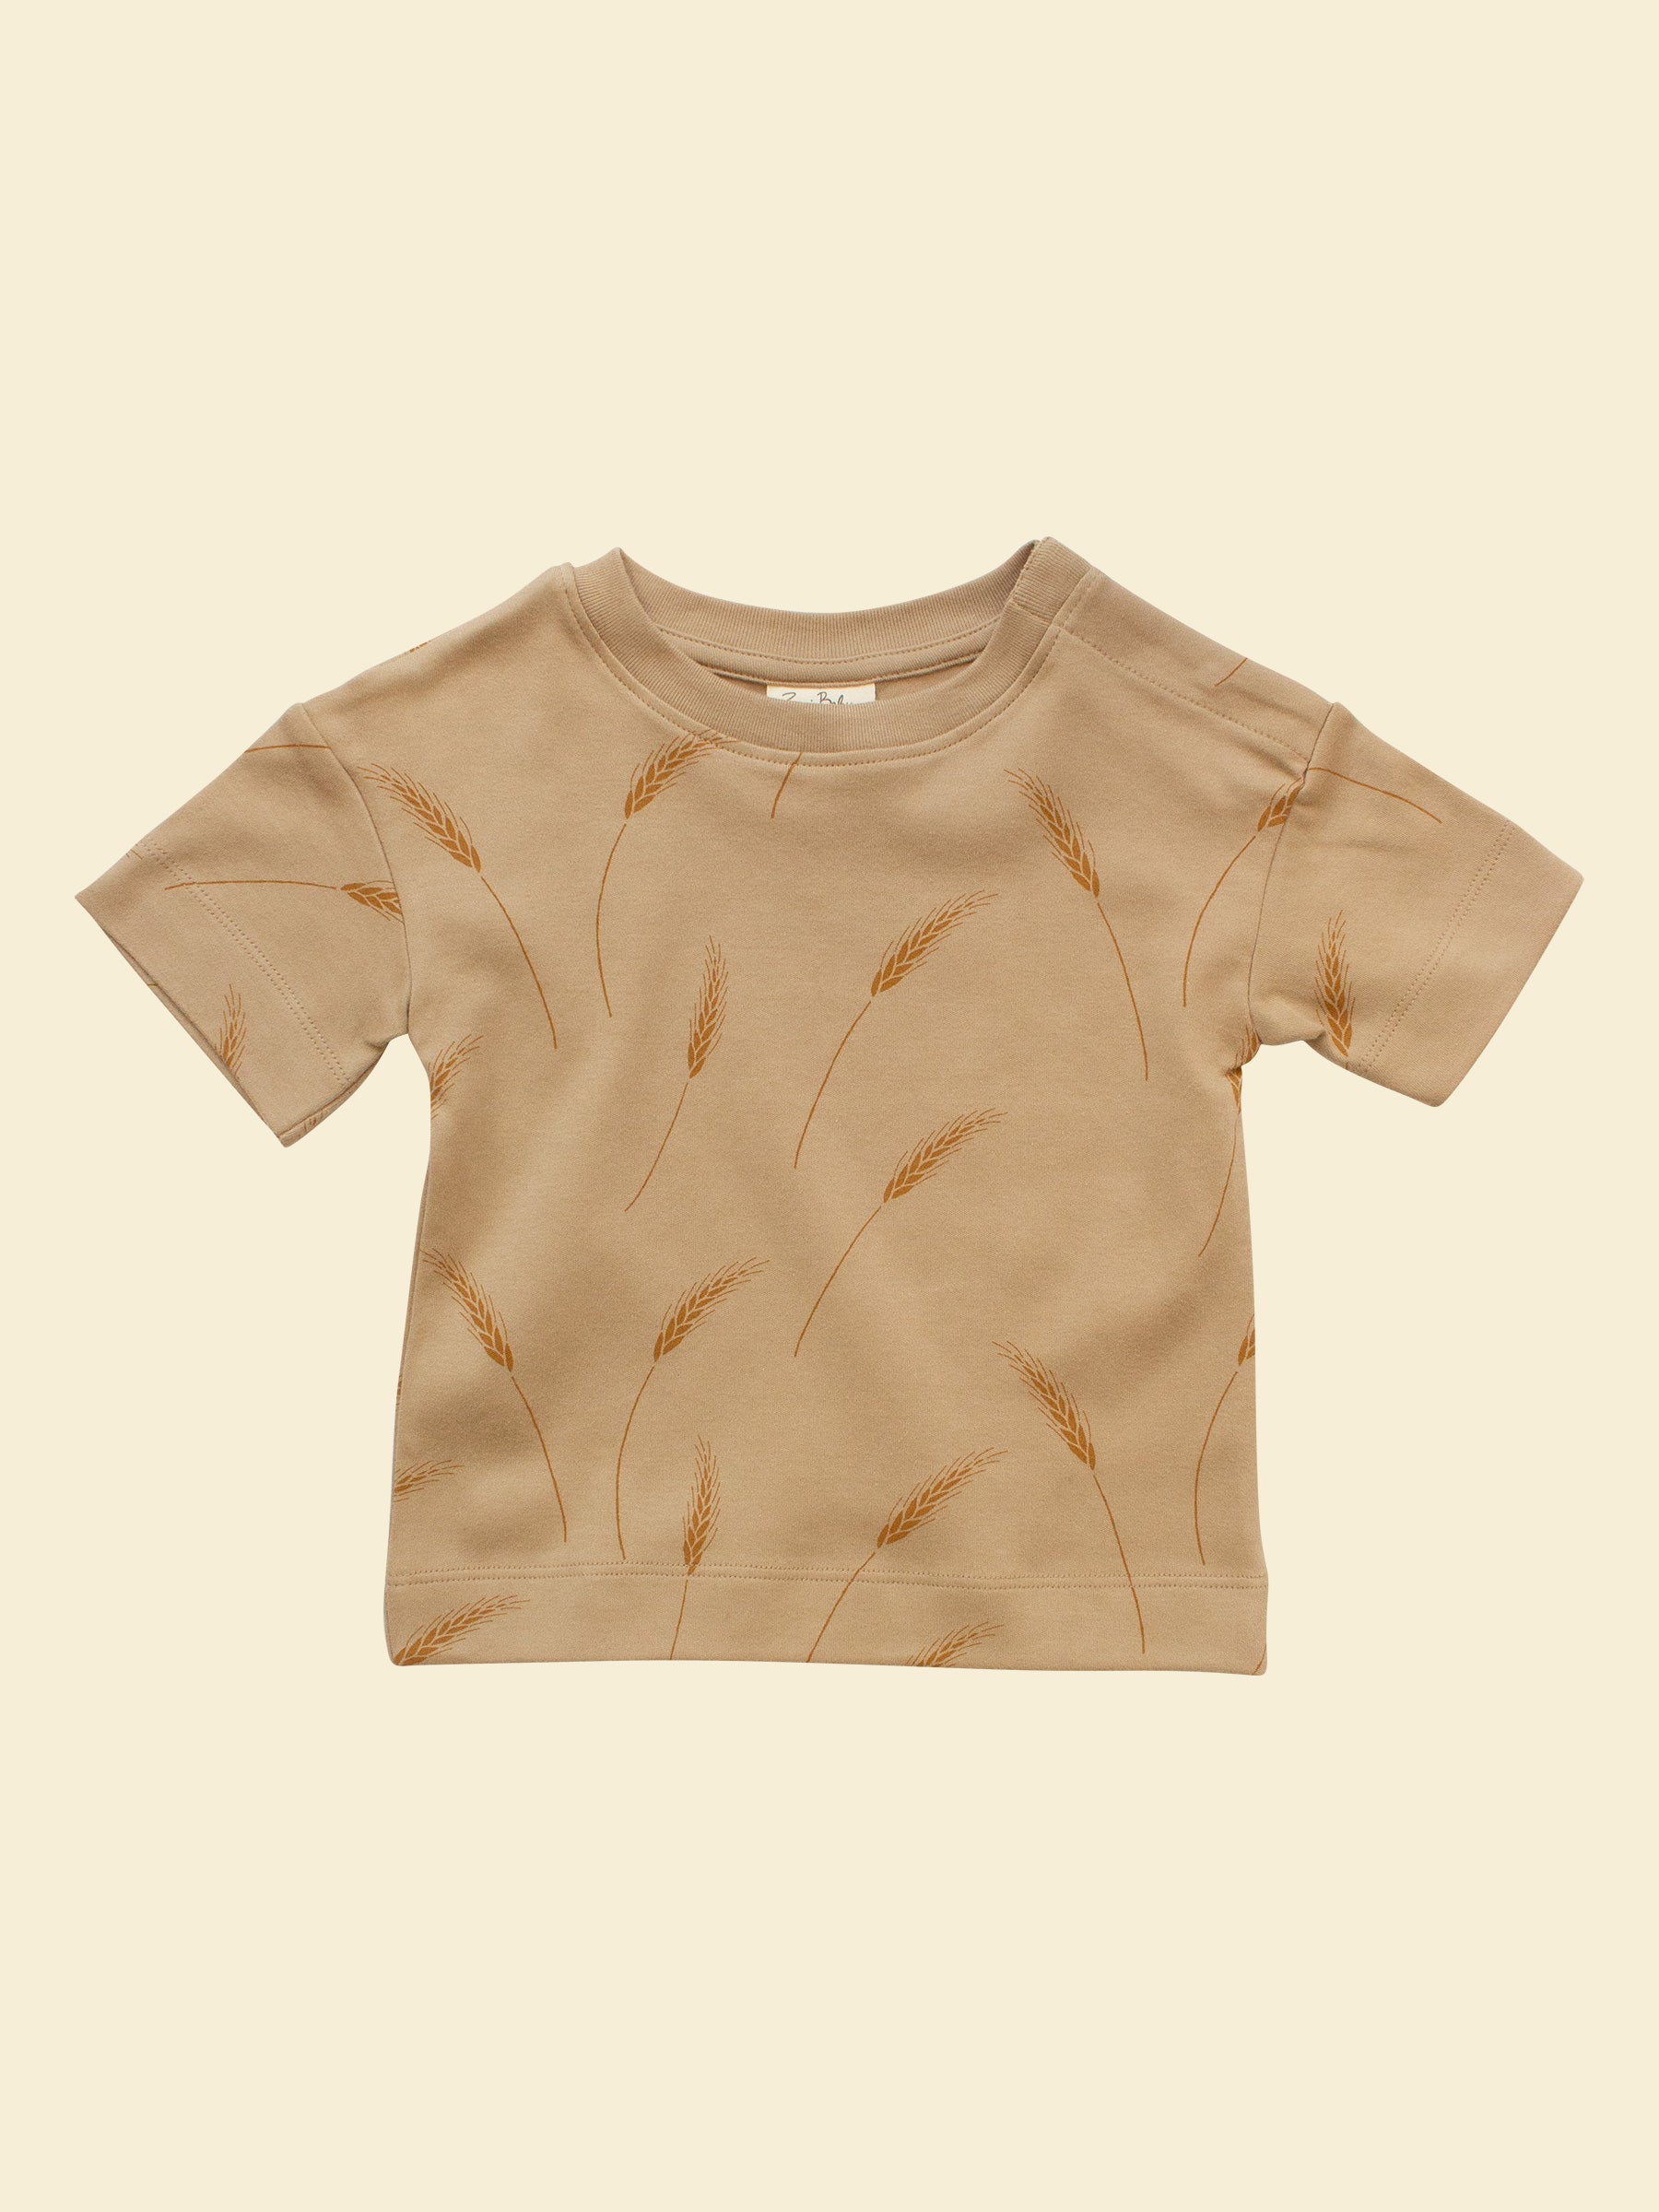 Organic Baby & Toddler Shirt - Wheat